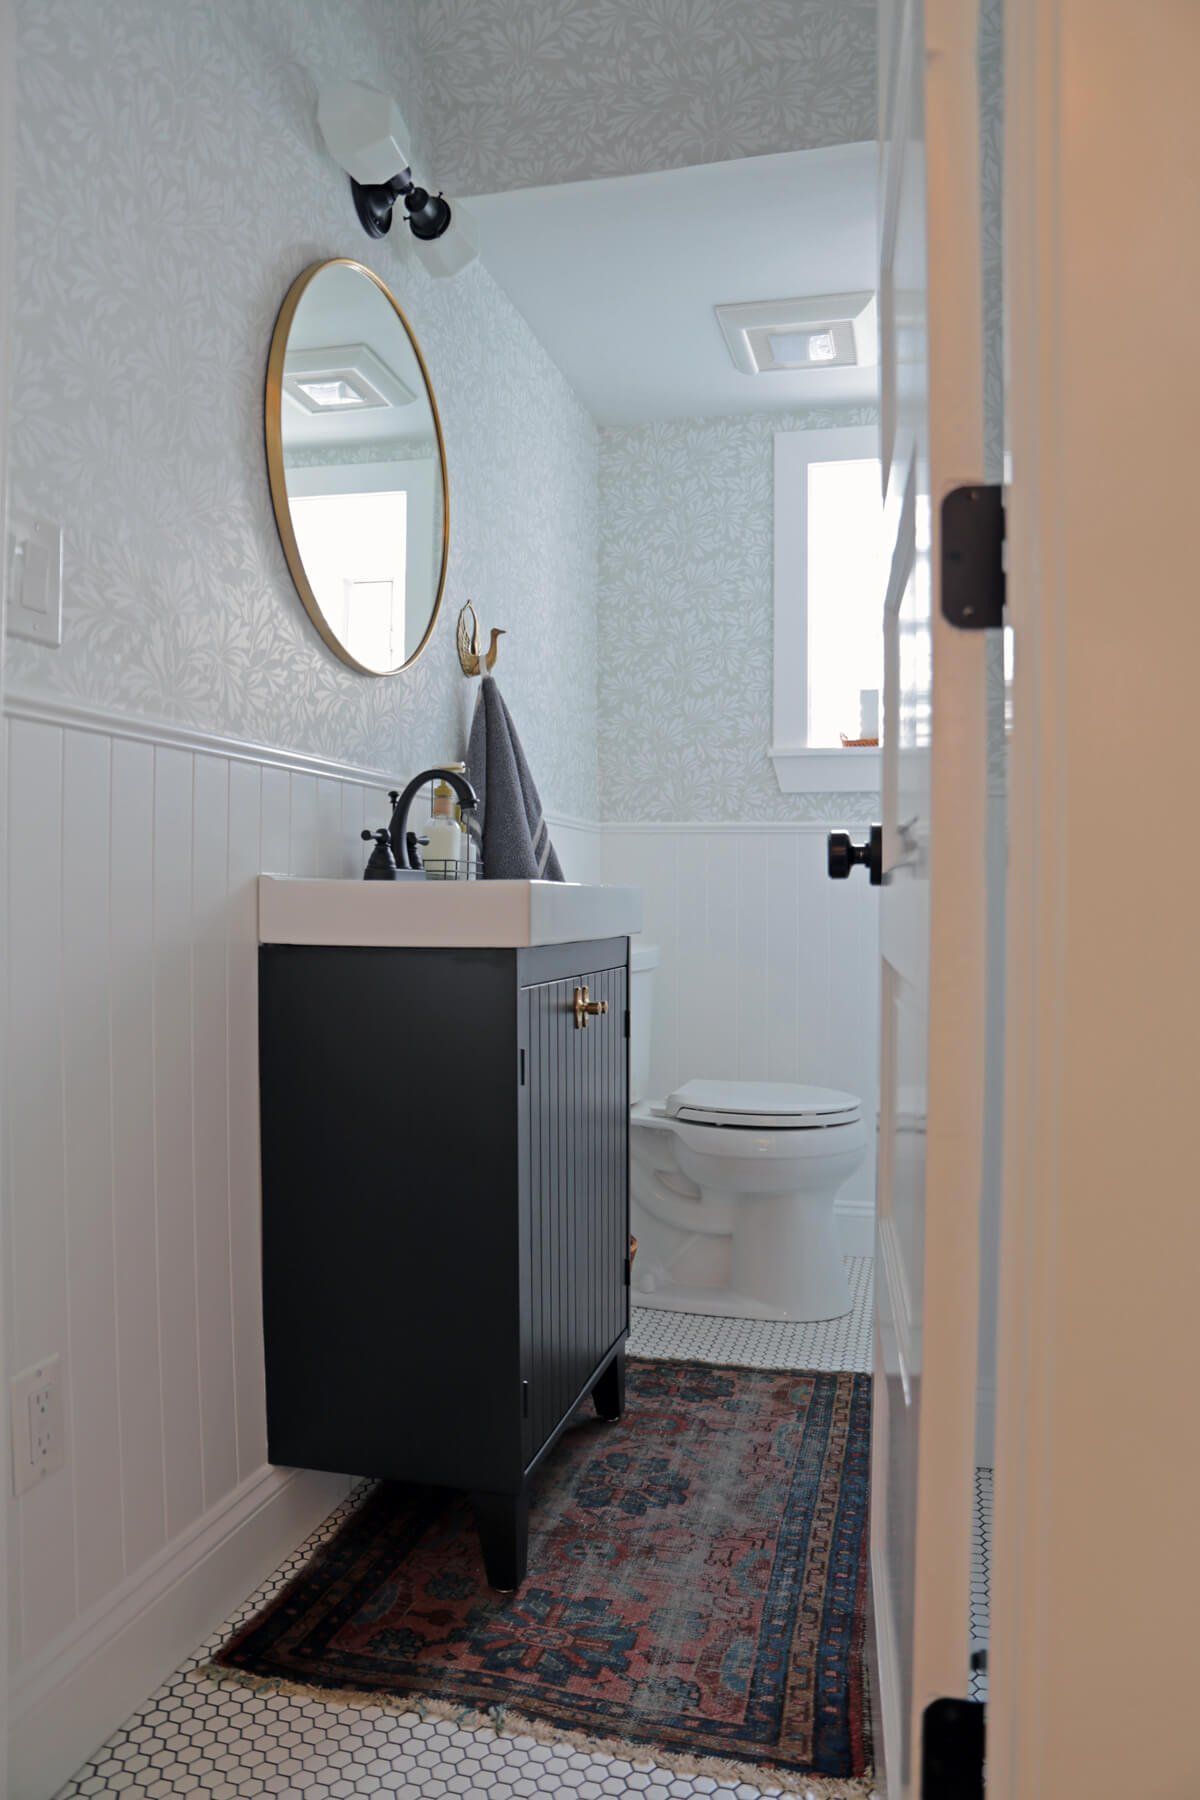 Customizing an IKEA Vanity for a Bungalow Bathroom - IKEA Hackers -   diy Bathroom ikea